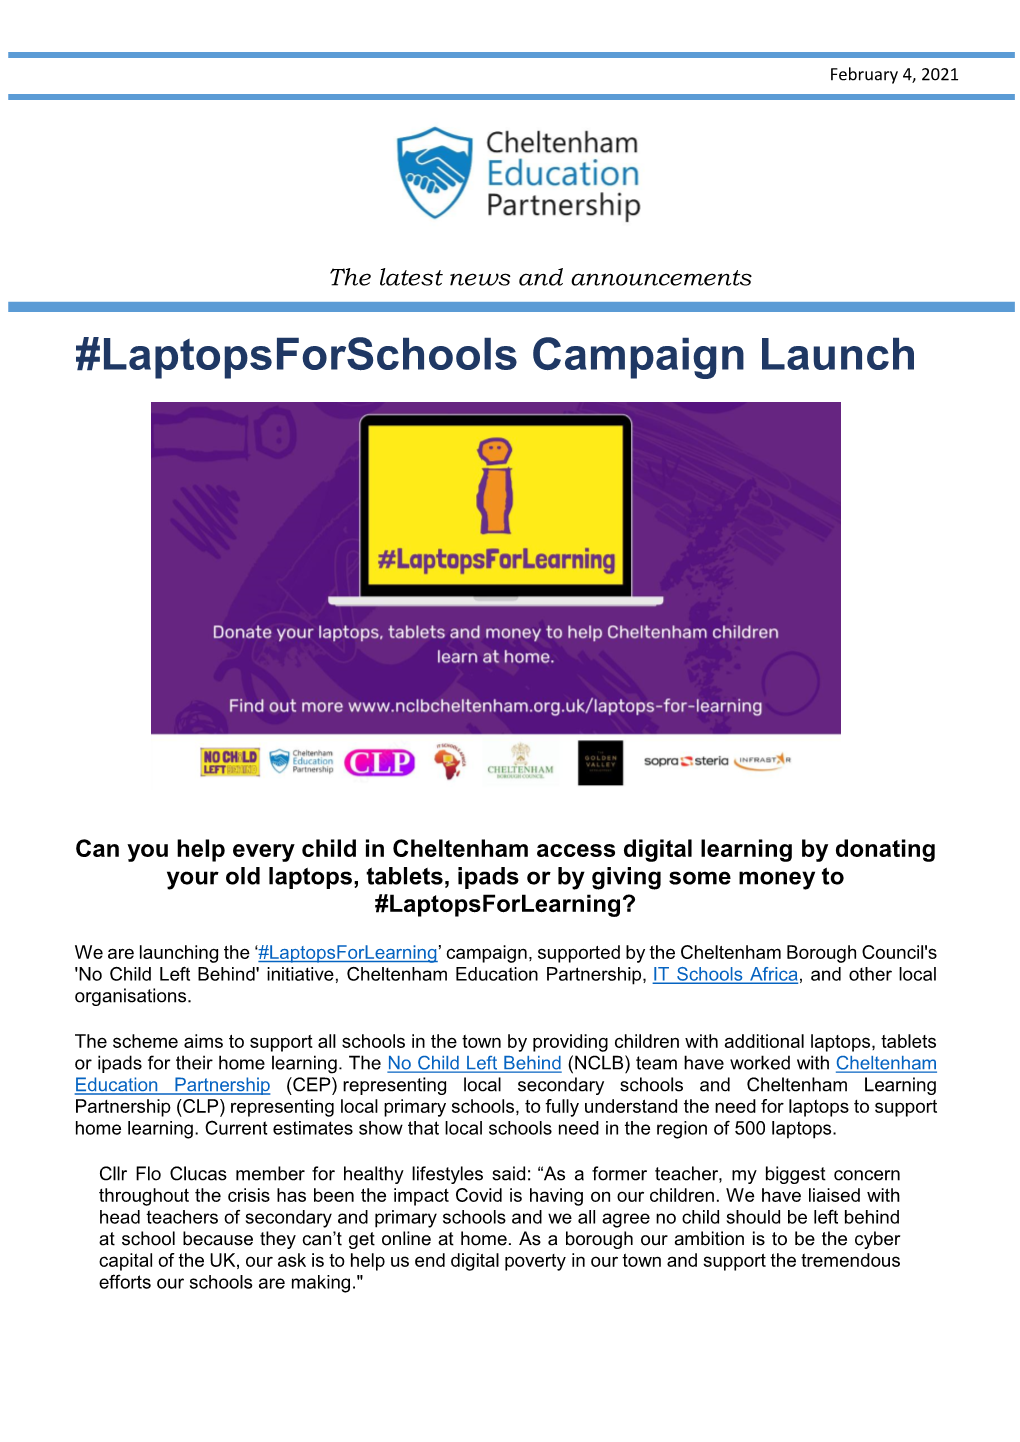 Laptopsforschools Campaign Launch